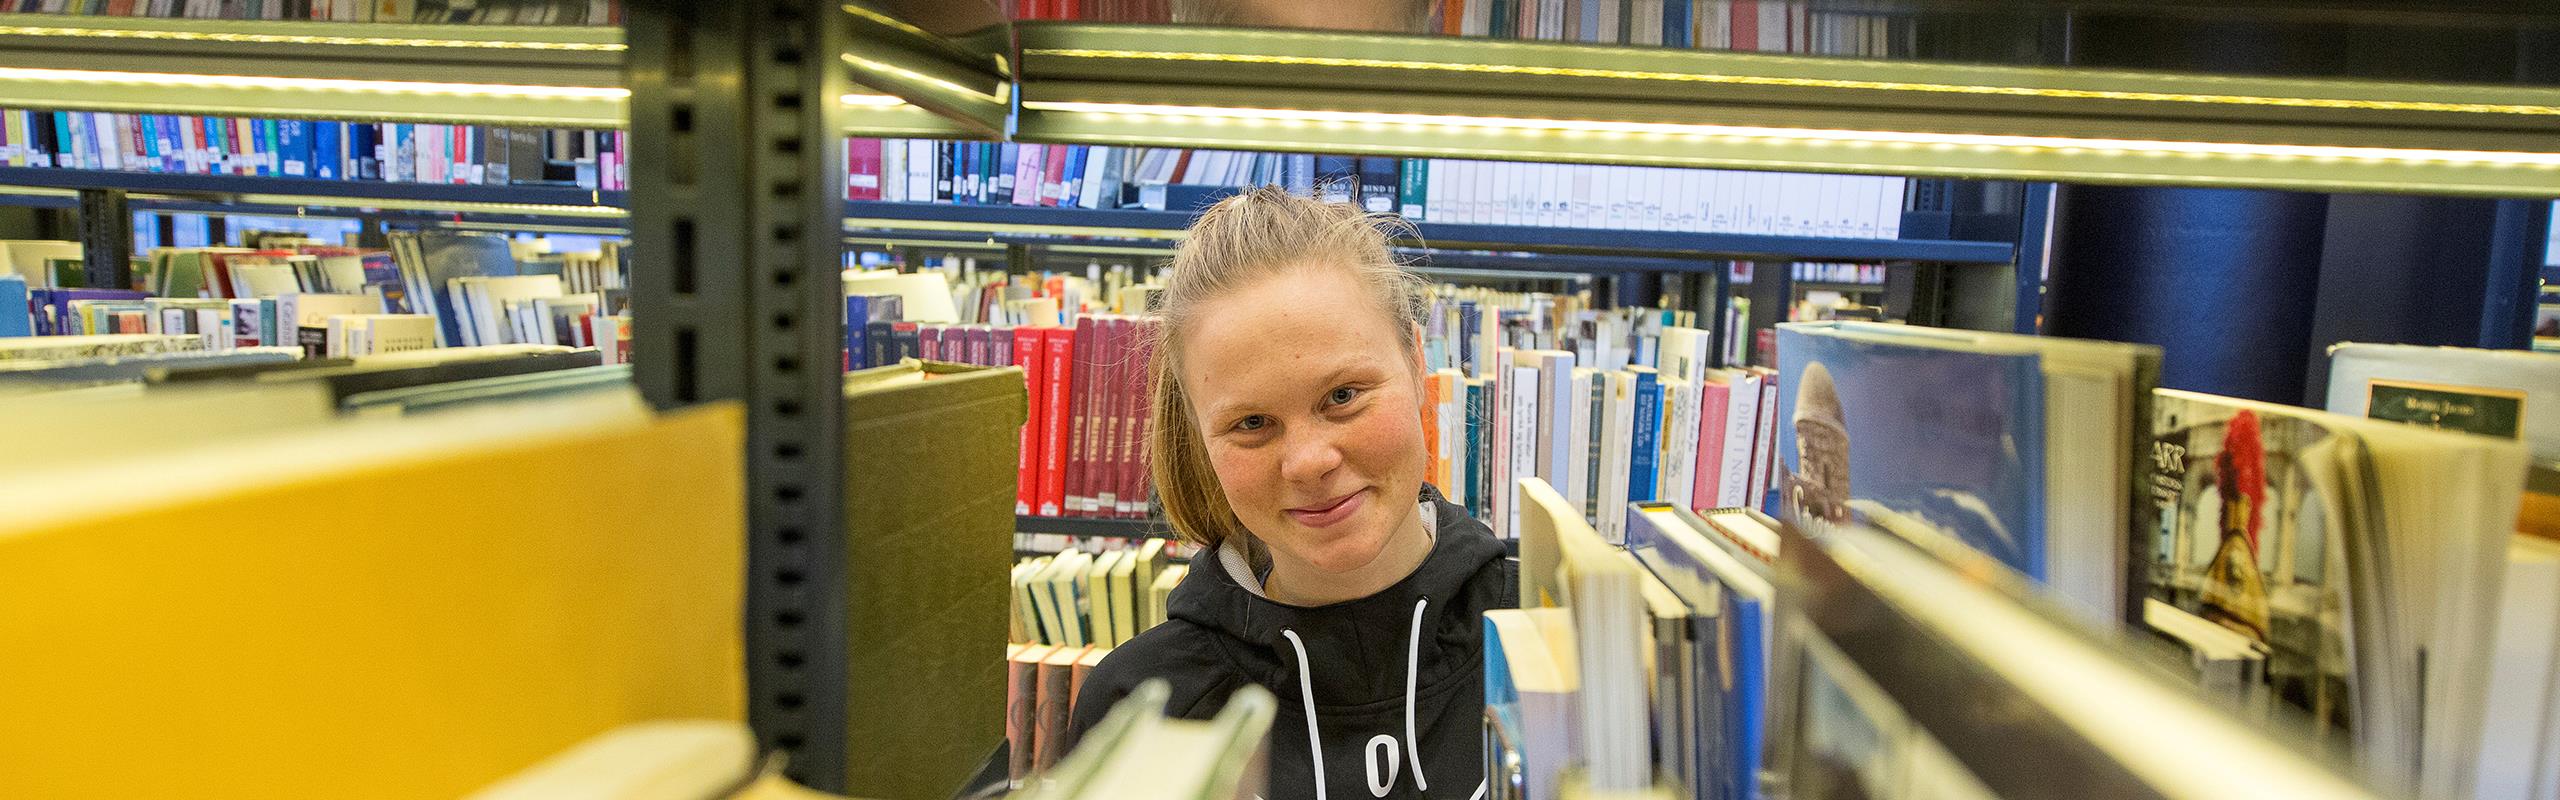 Kvinneleg student ved bokhyller på biblioteket.